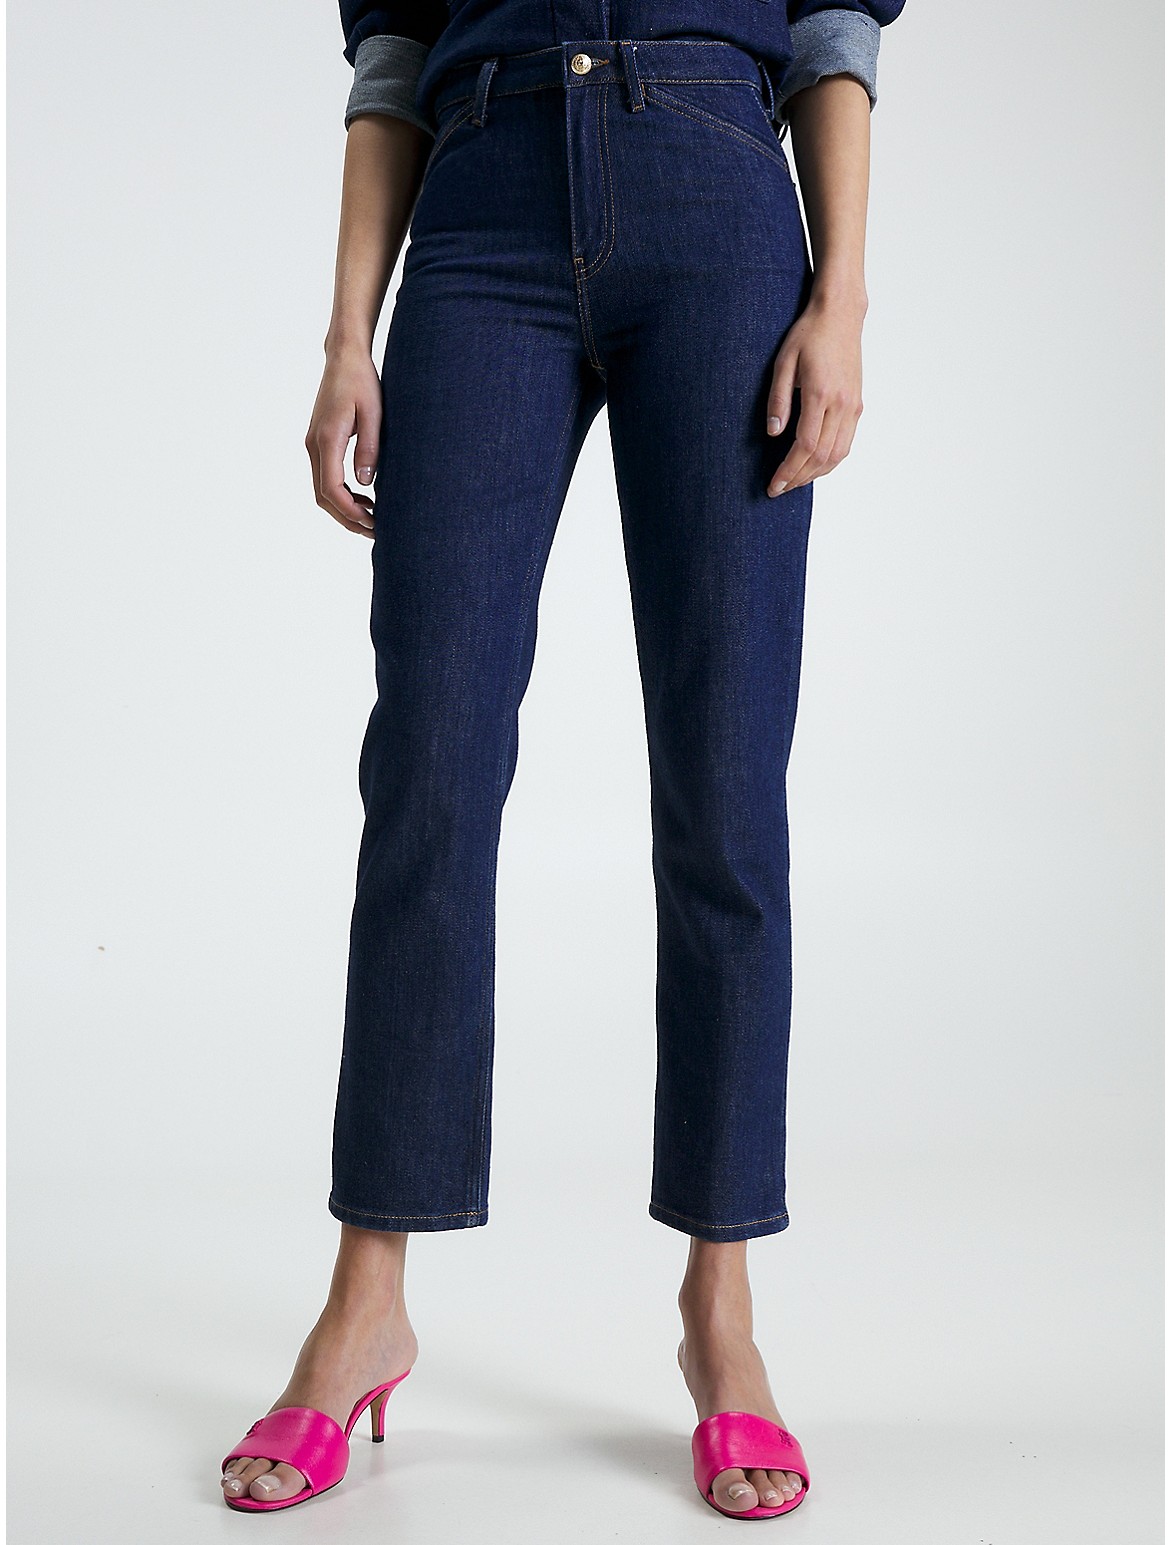 Tommy Hilfiger Women's High-Waist Straight Fit Jean - Blue - 33W x 32L